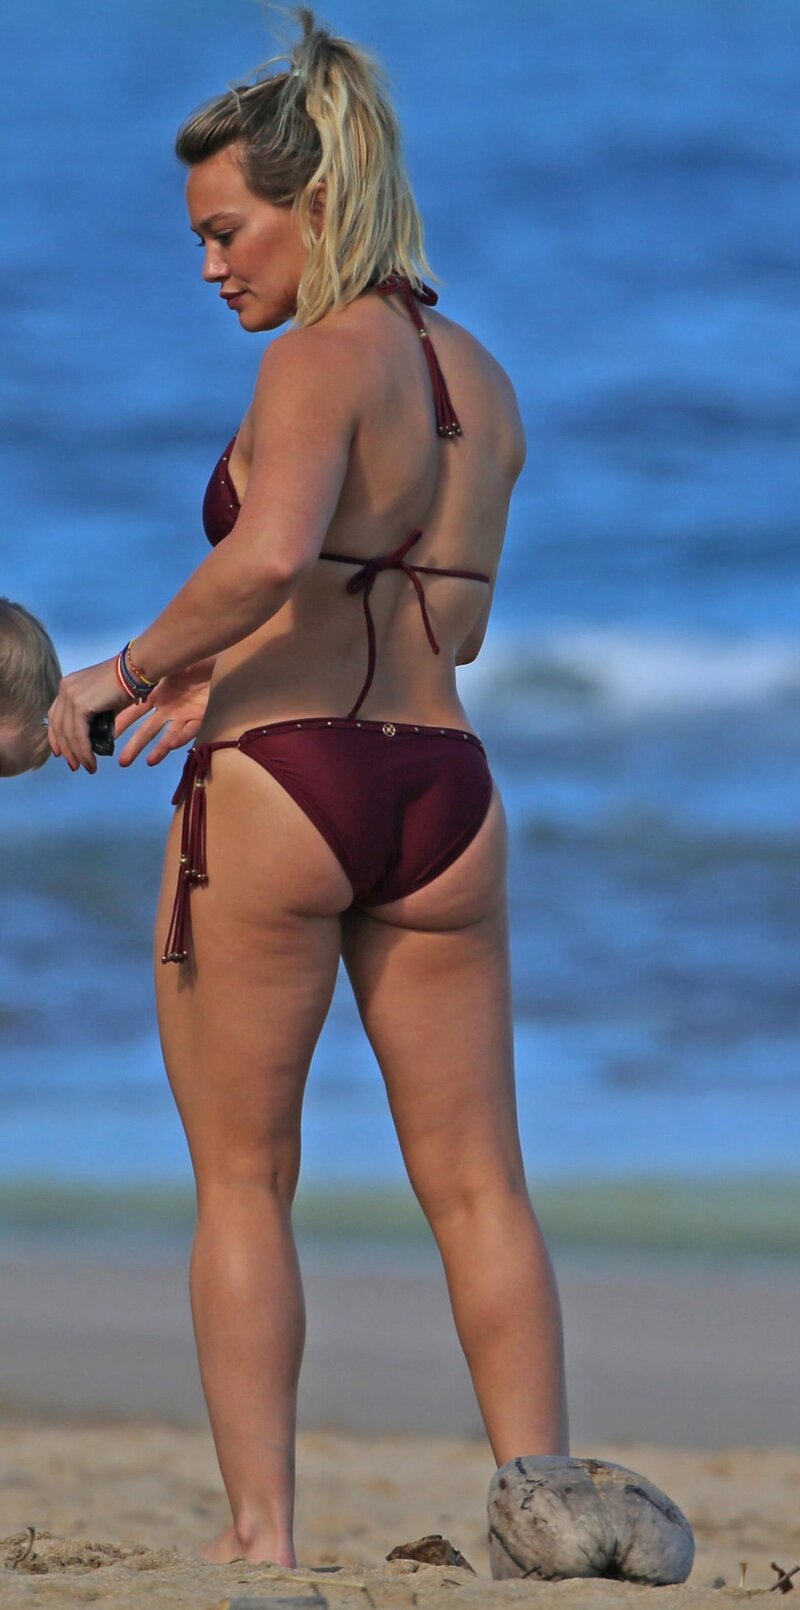 Hilary Duff bikini picture